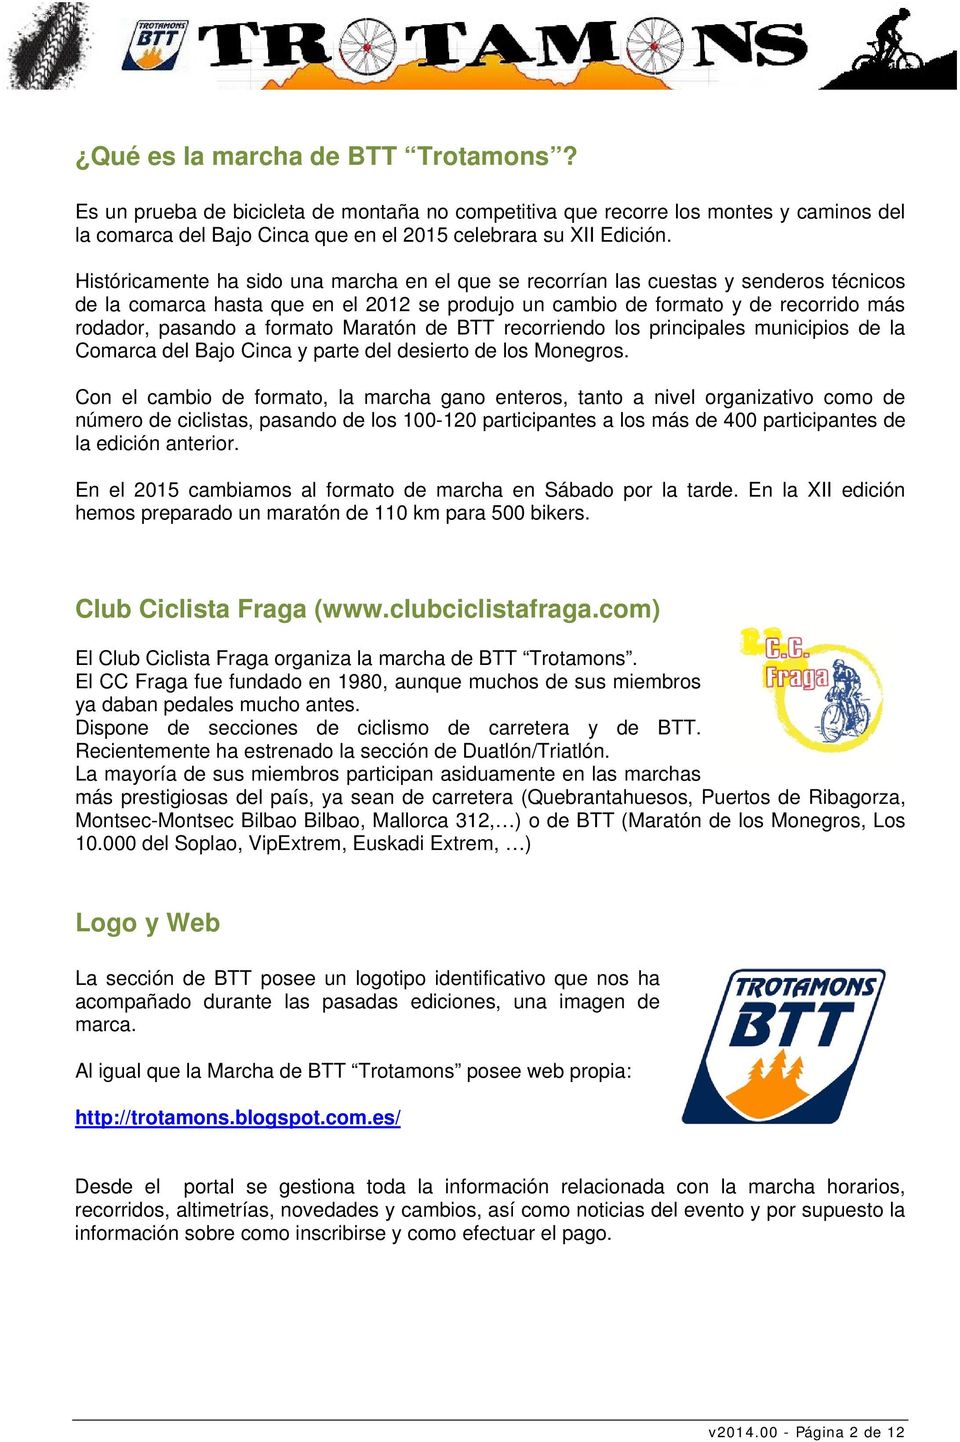 formato Maratón de BTT recorriendo los principales municipios de la Comarca del Bajo Cinca y parte del desierto de los Monegros.